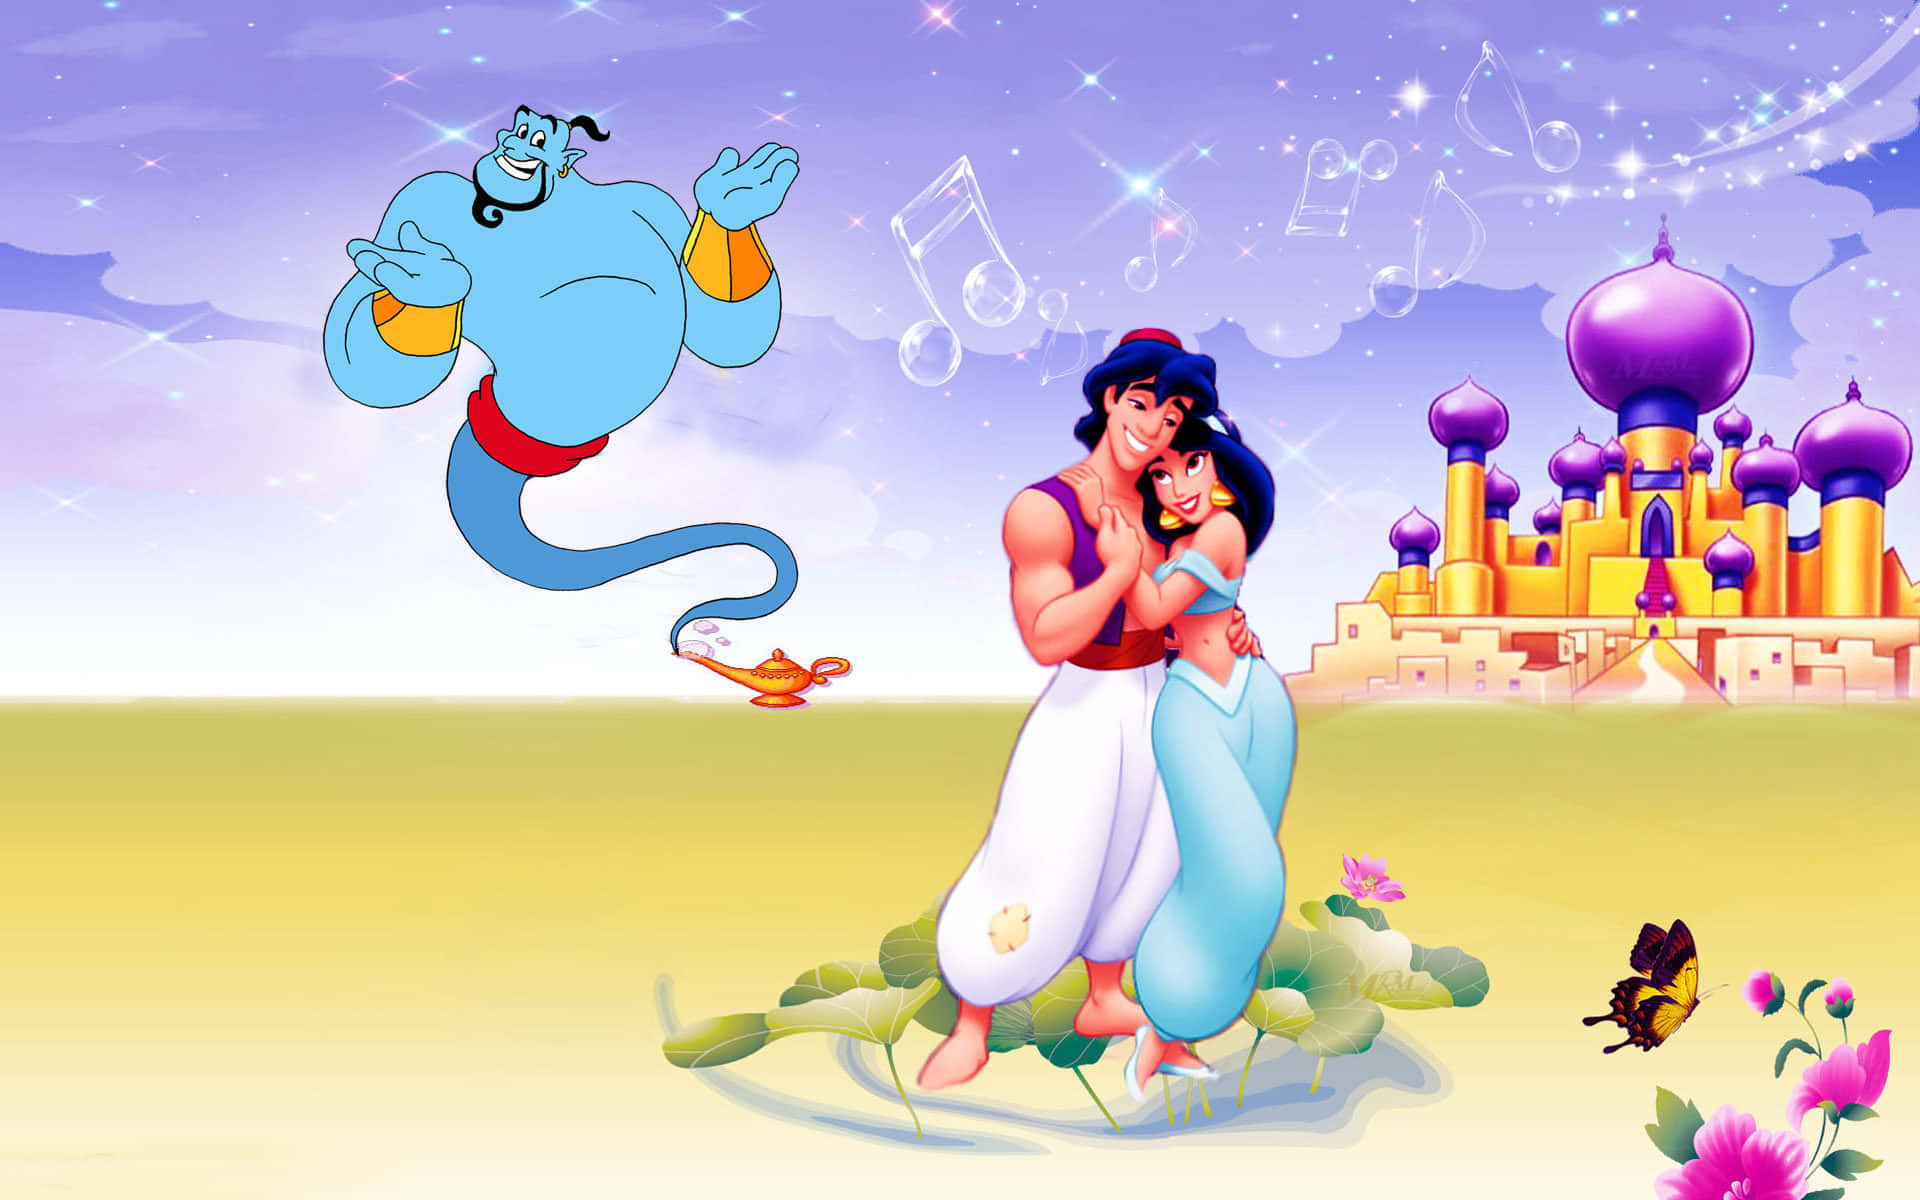 Aladdin, Genie, and Abu flying on a magic carpet